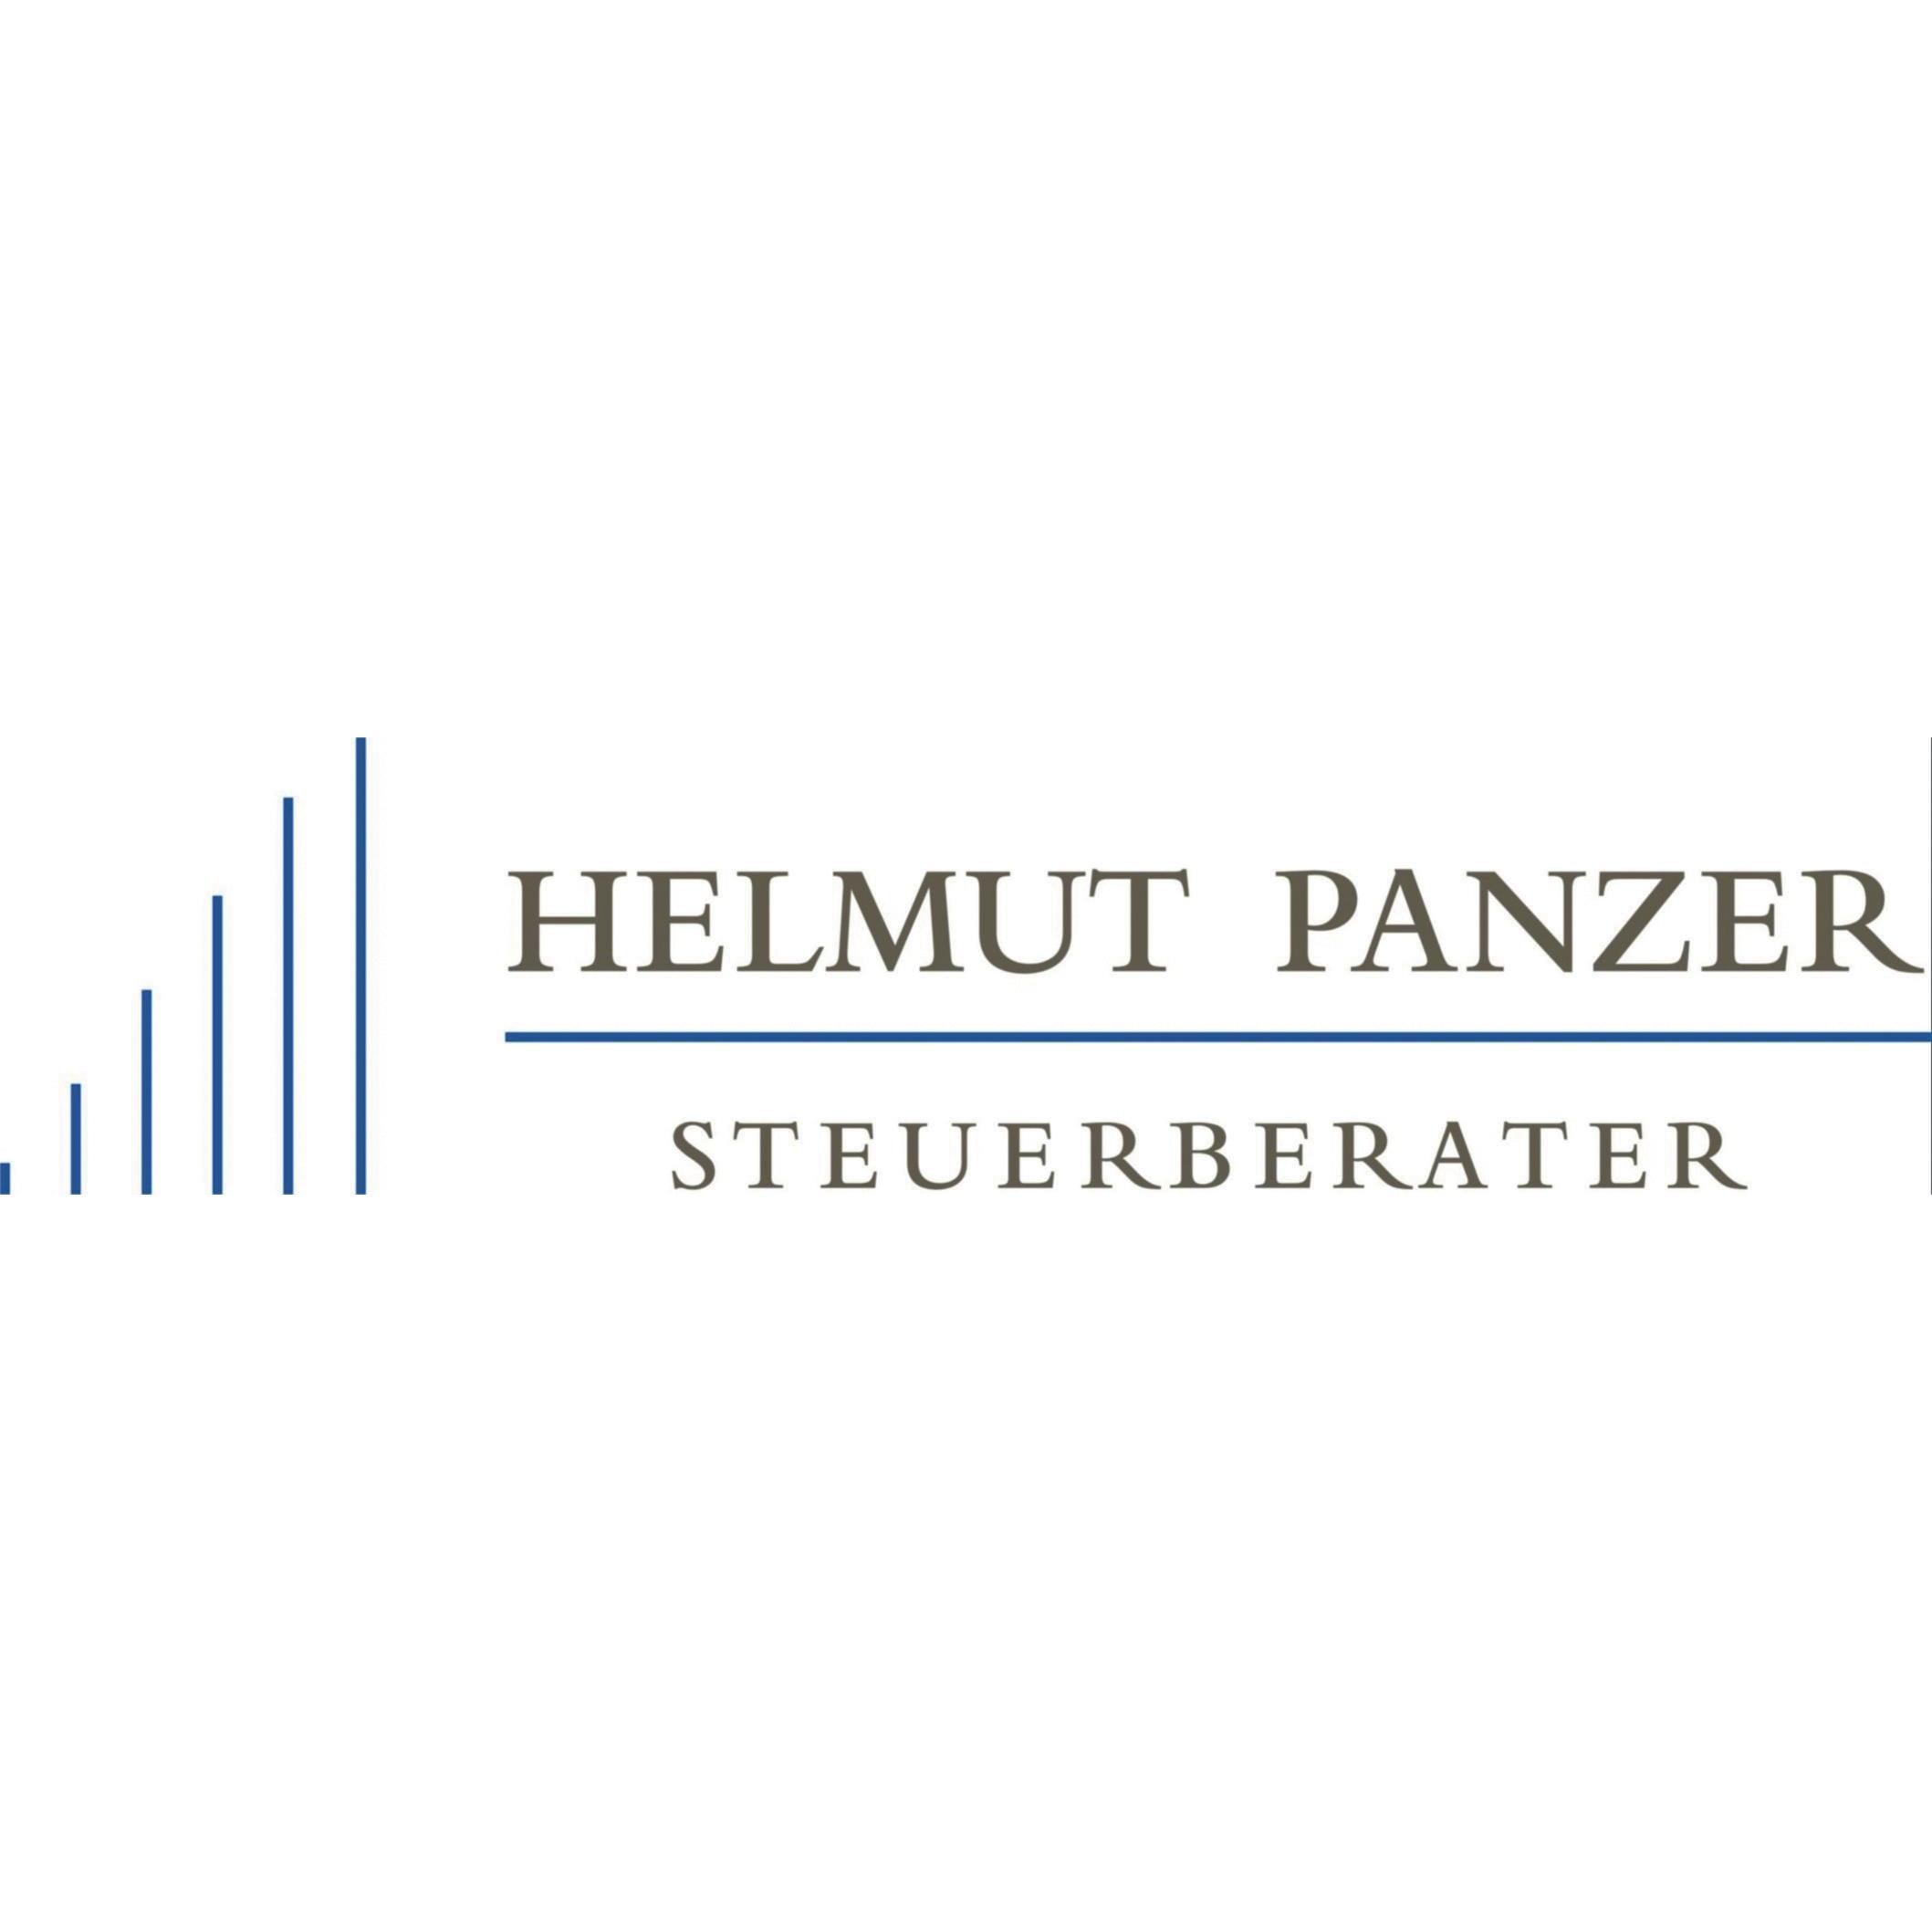 Helmut Panzer Steuerberater